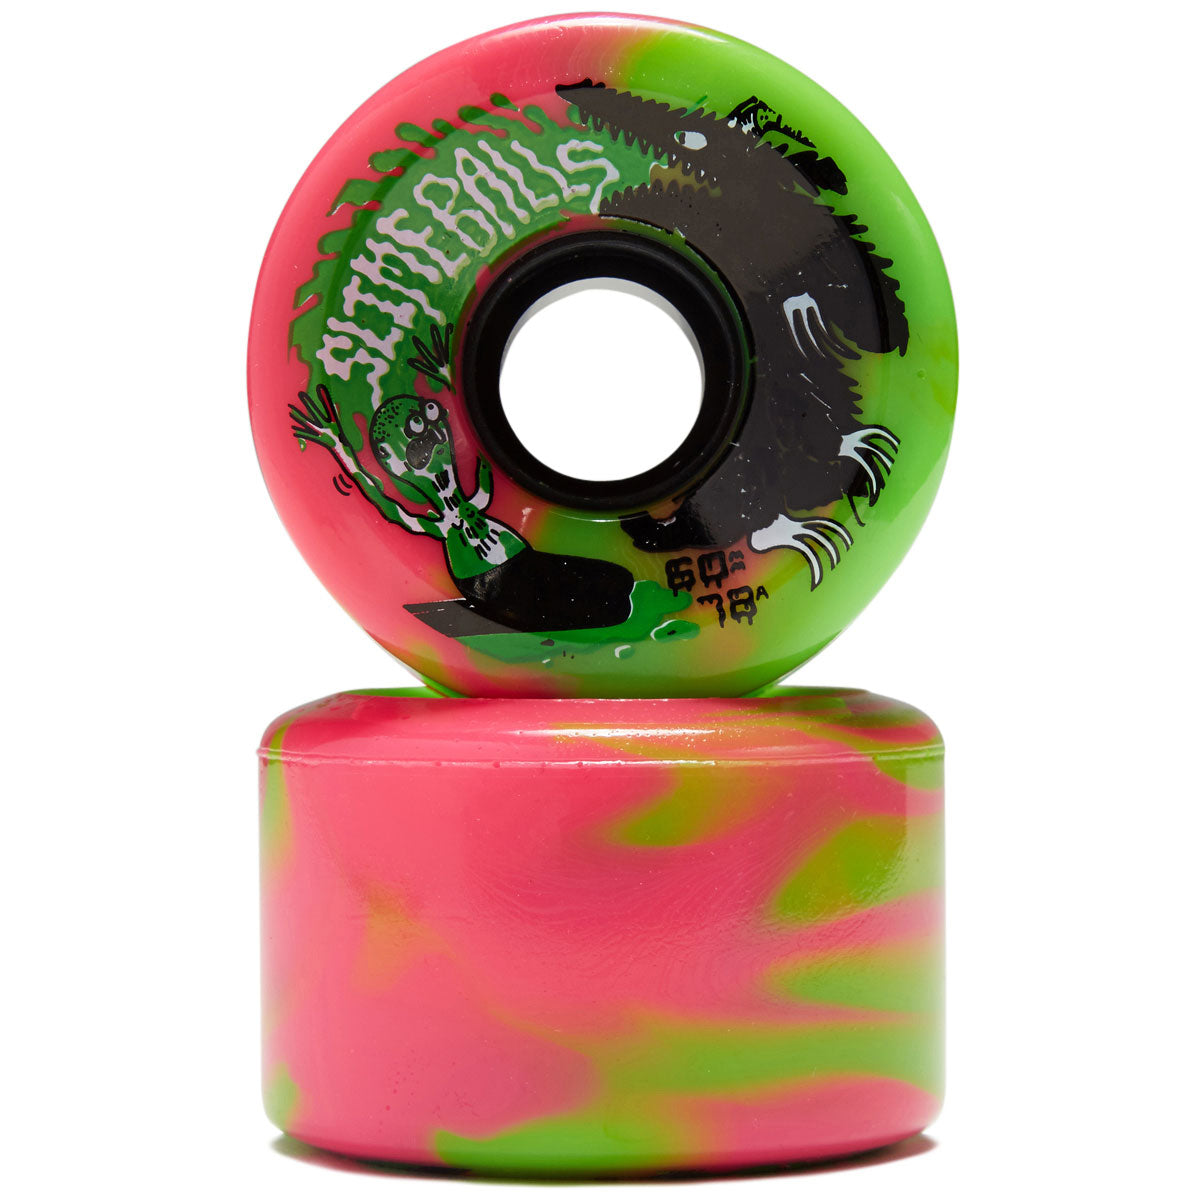 Slime Balls Jay Howell OG Slime 78a Skateboard Wheels - Pink/Green Swirl - 60mm image 2